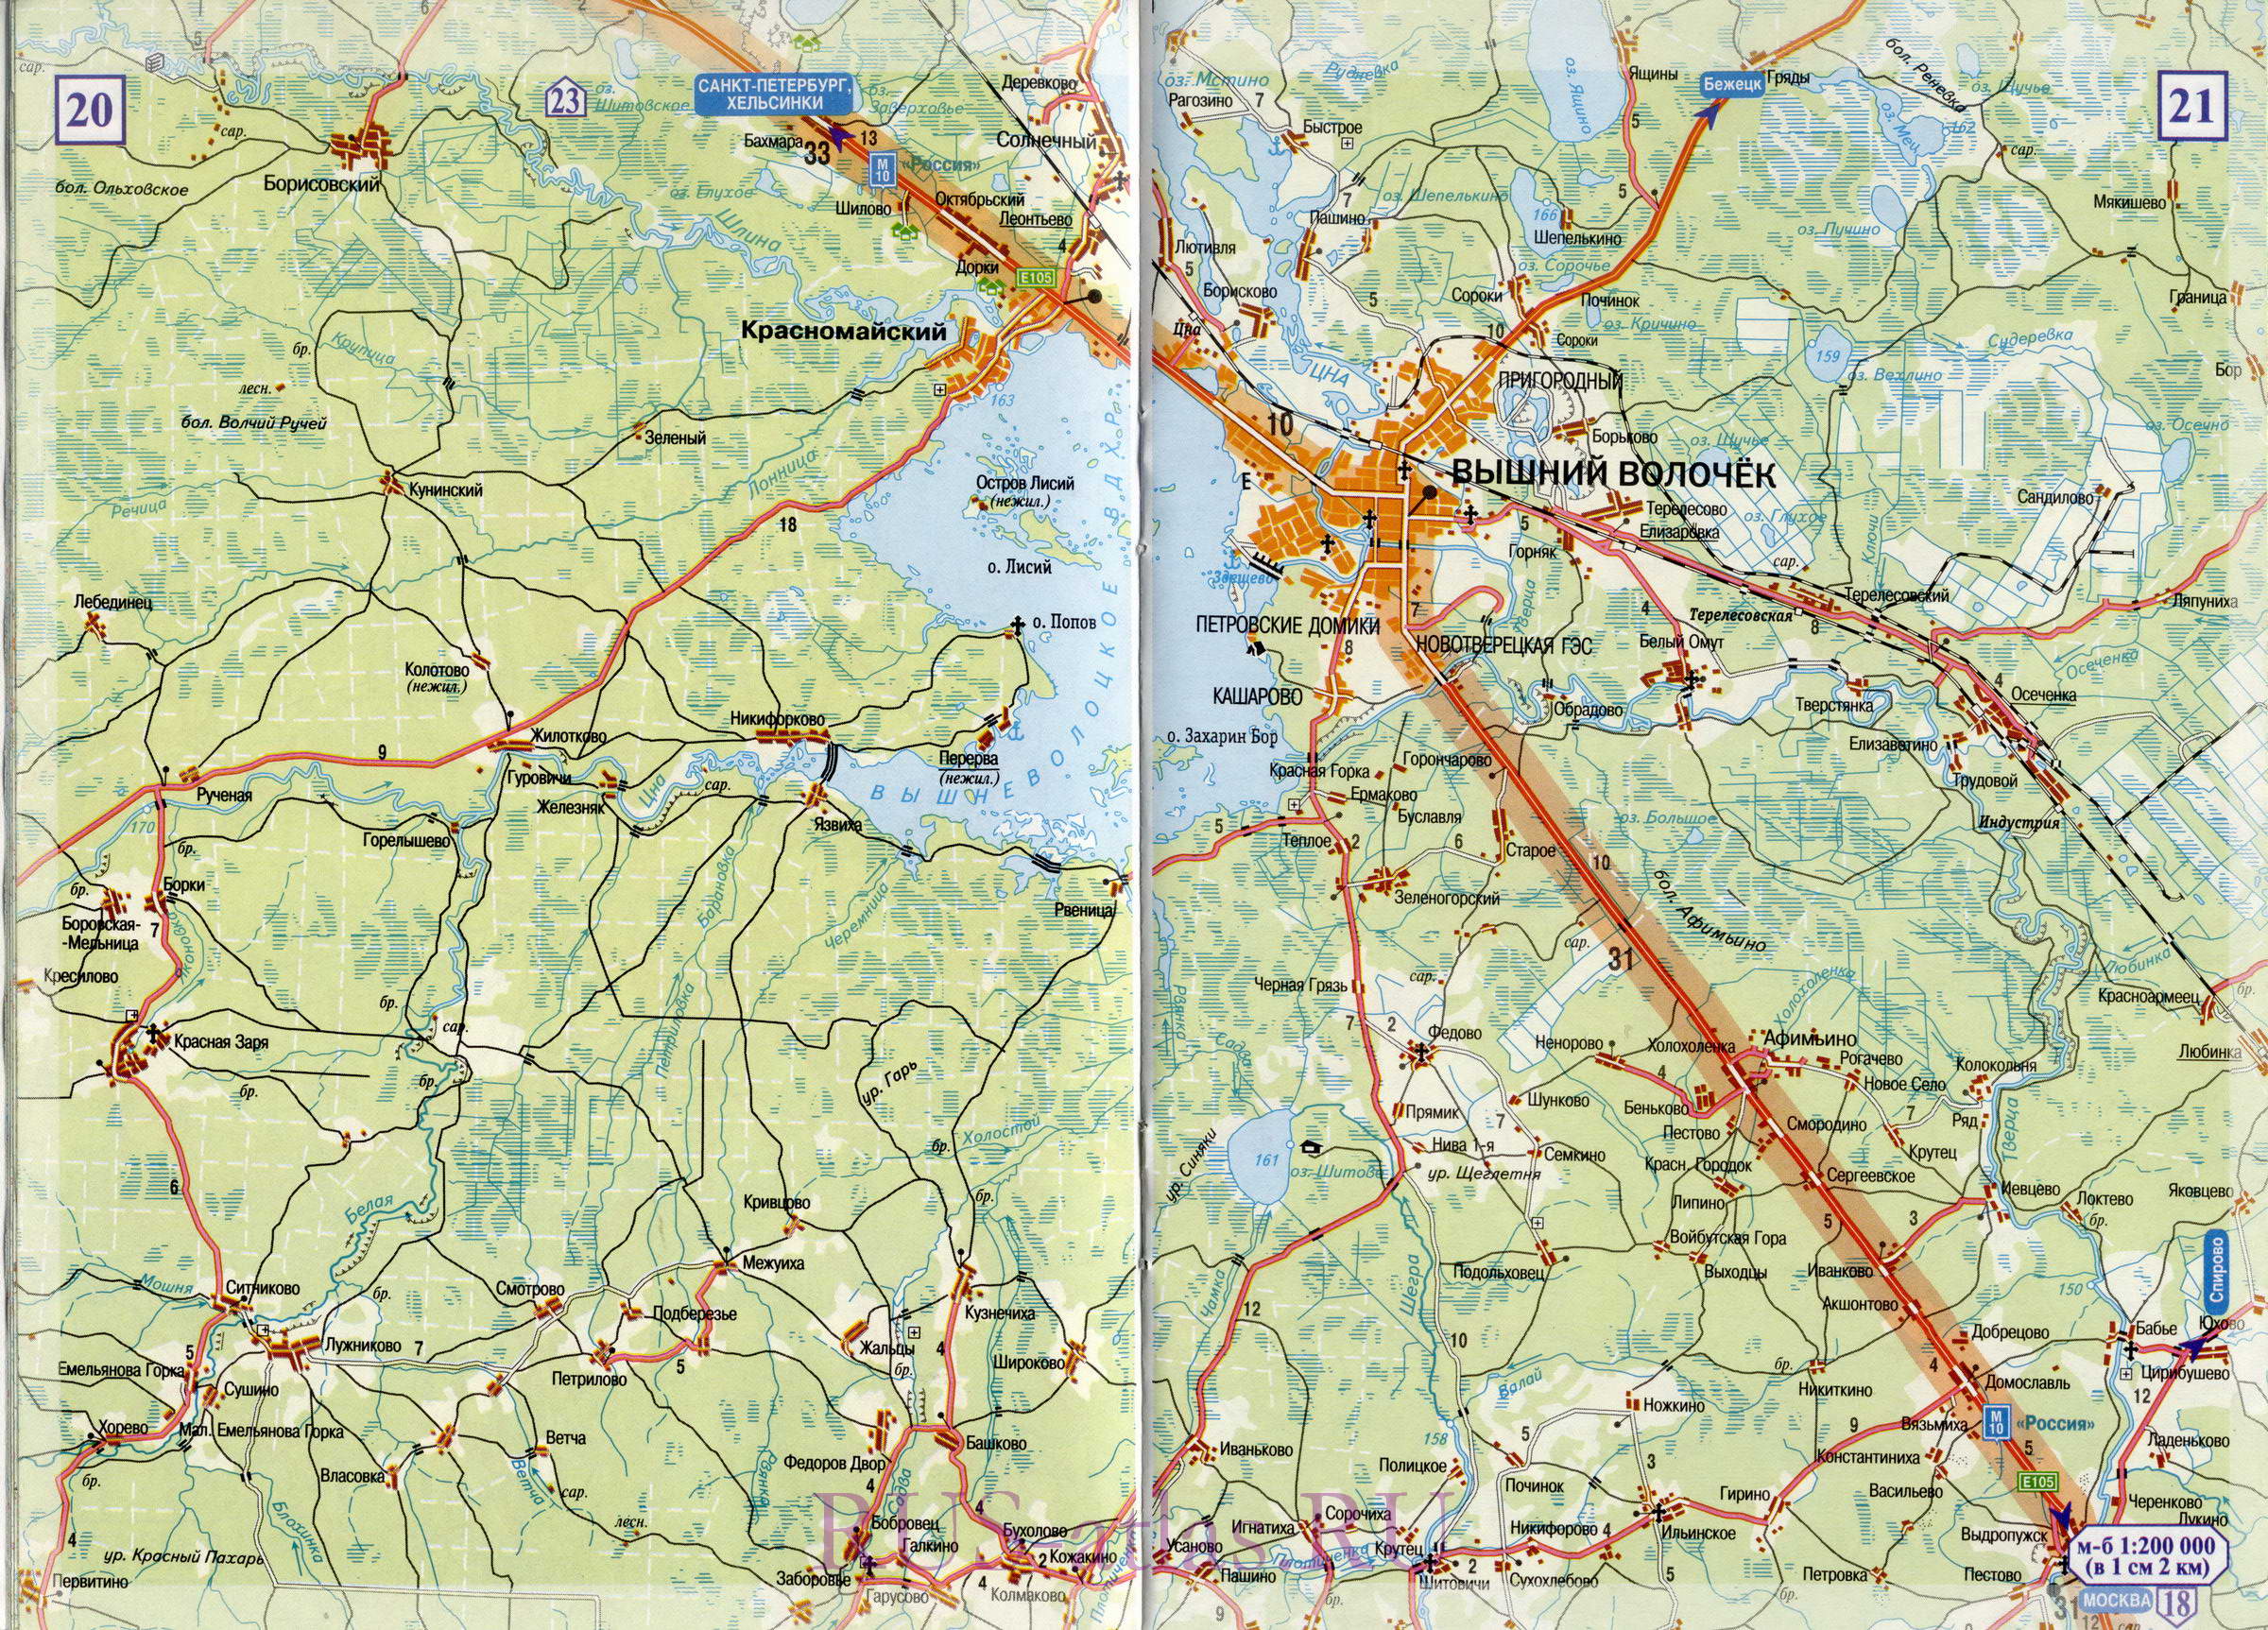 Карта Тверь Валдай. Подробная карта федеральной автомобильной трассы М10 от Твери до города Валдай, C0 - 